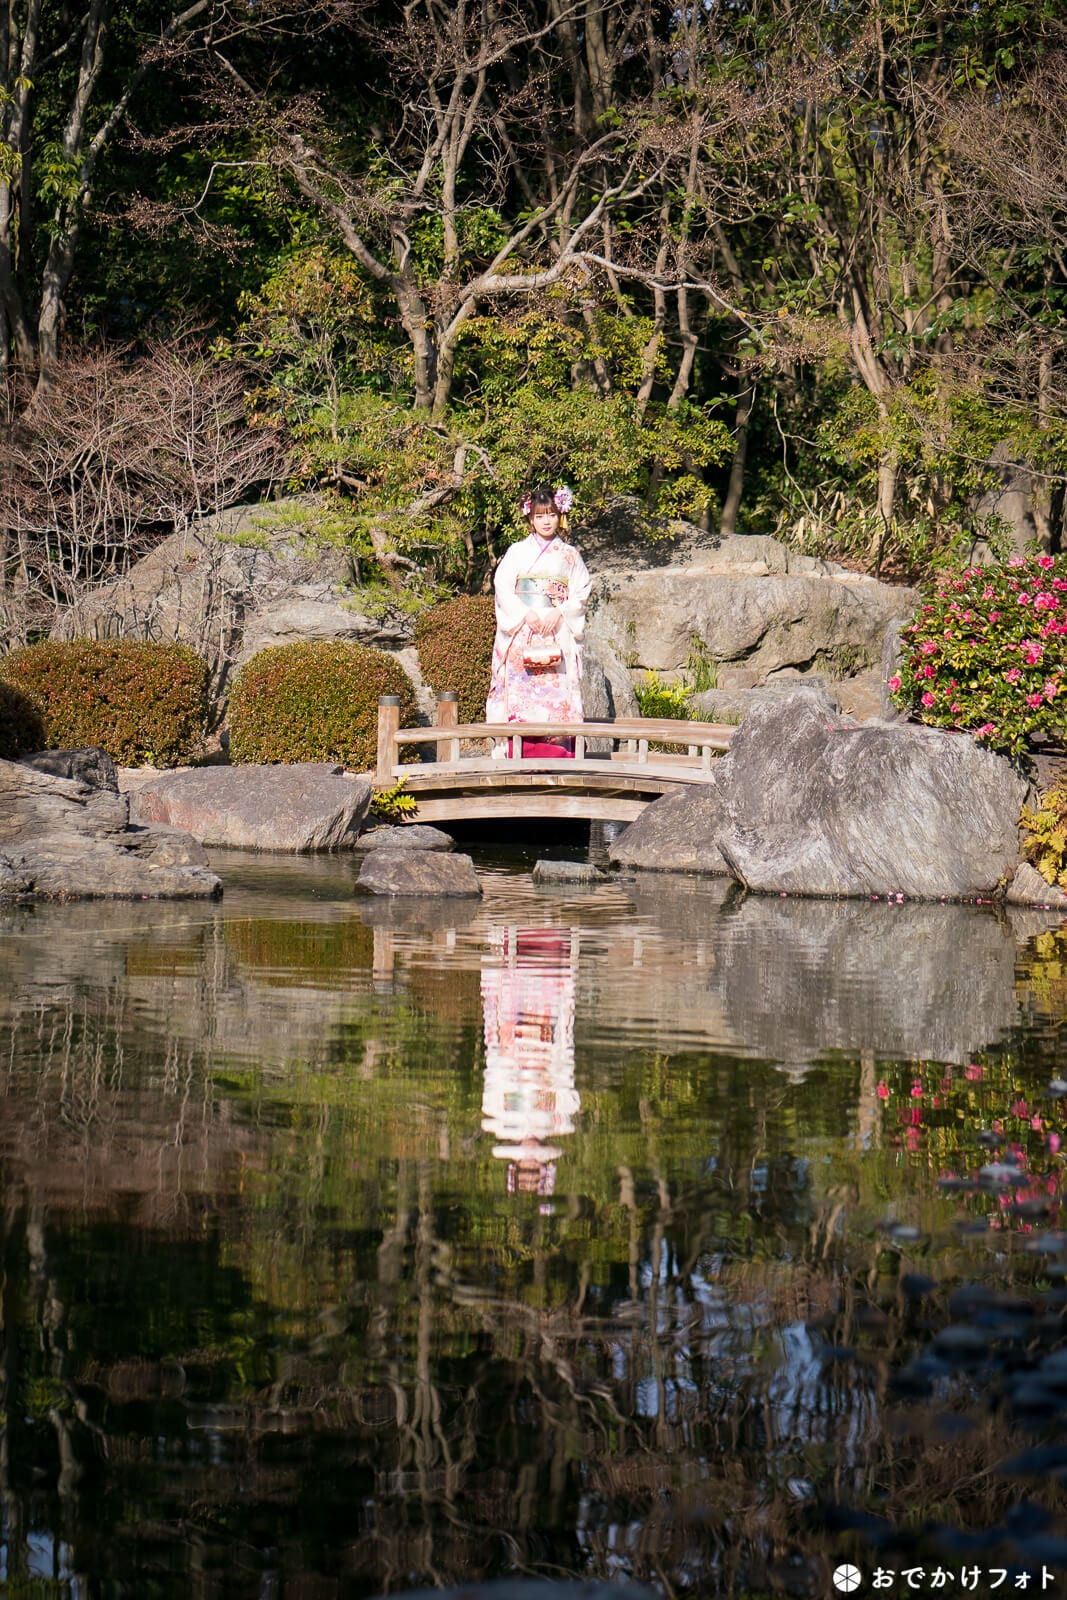 福岡市大濠公園日本庭園で成人式のロケーション前撮り